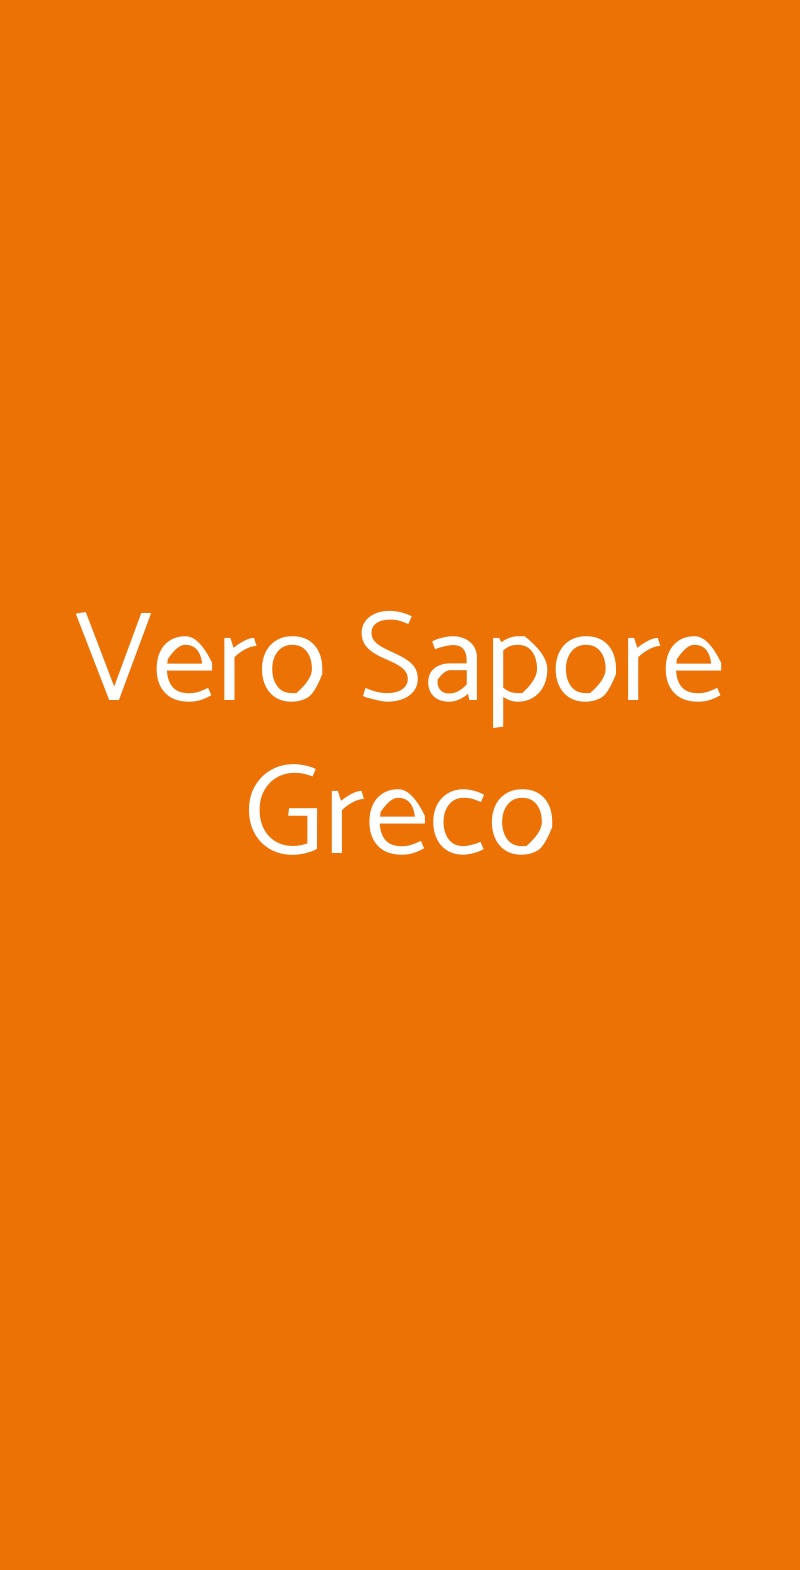 Vero Sapore Greco Milano menù 1 pagina